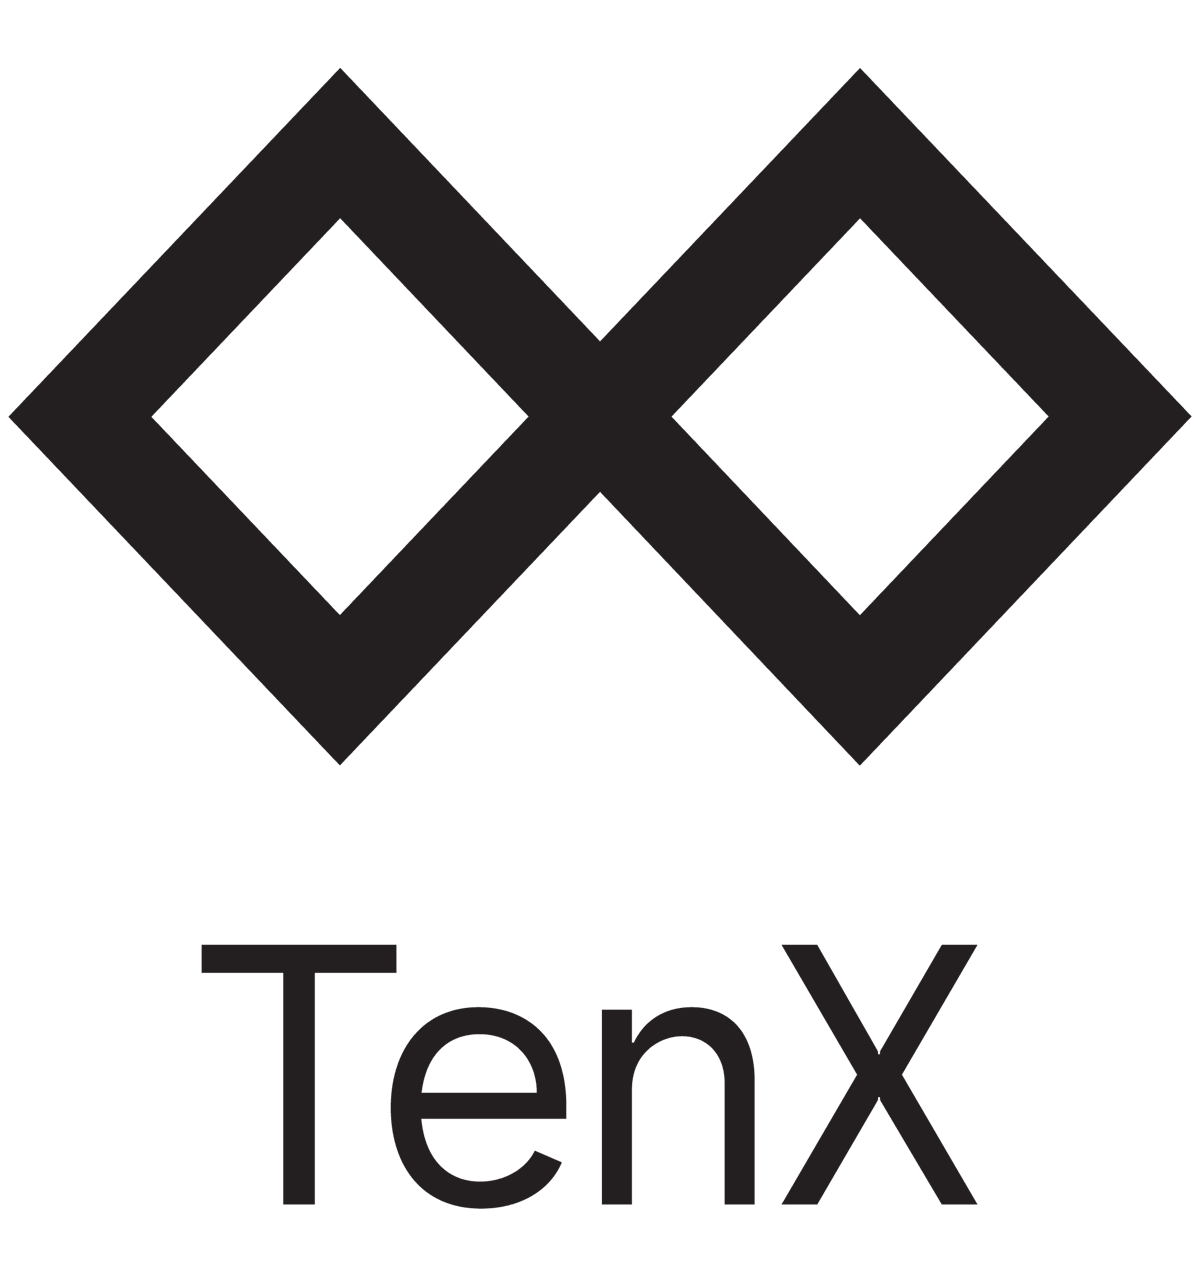 TenX bald mit neuem Token?